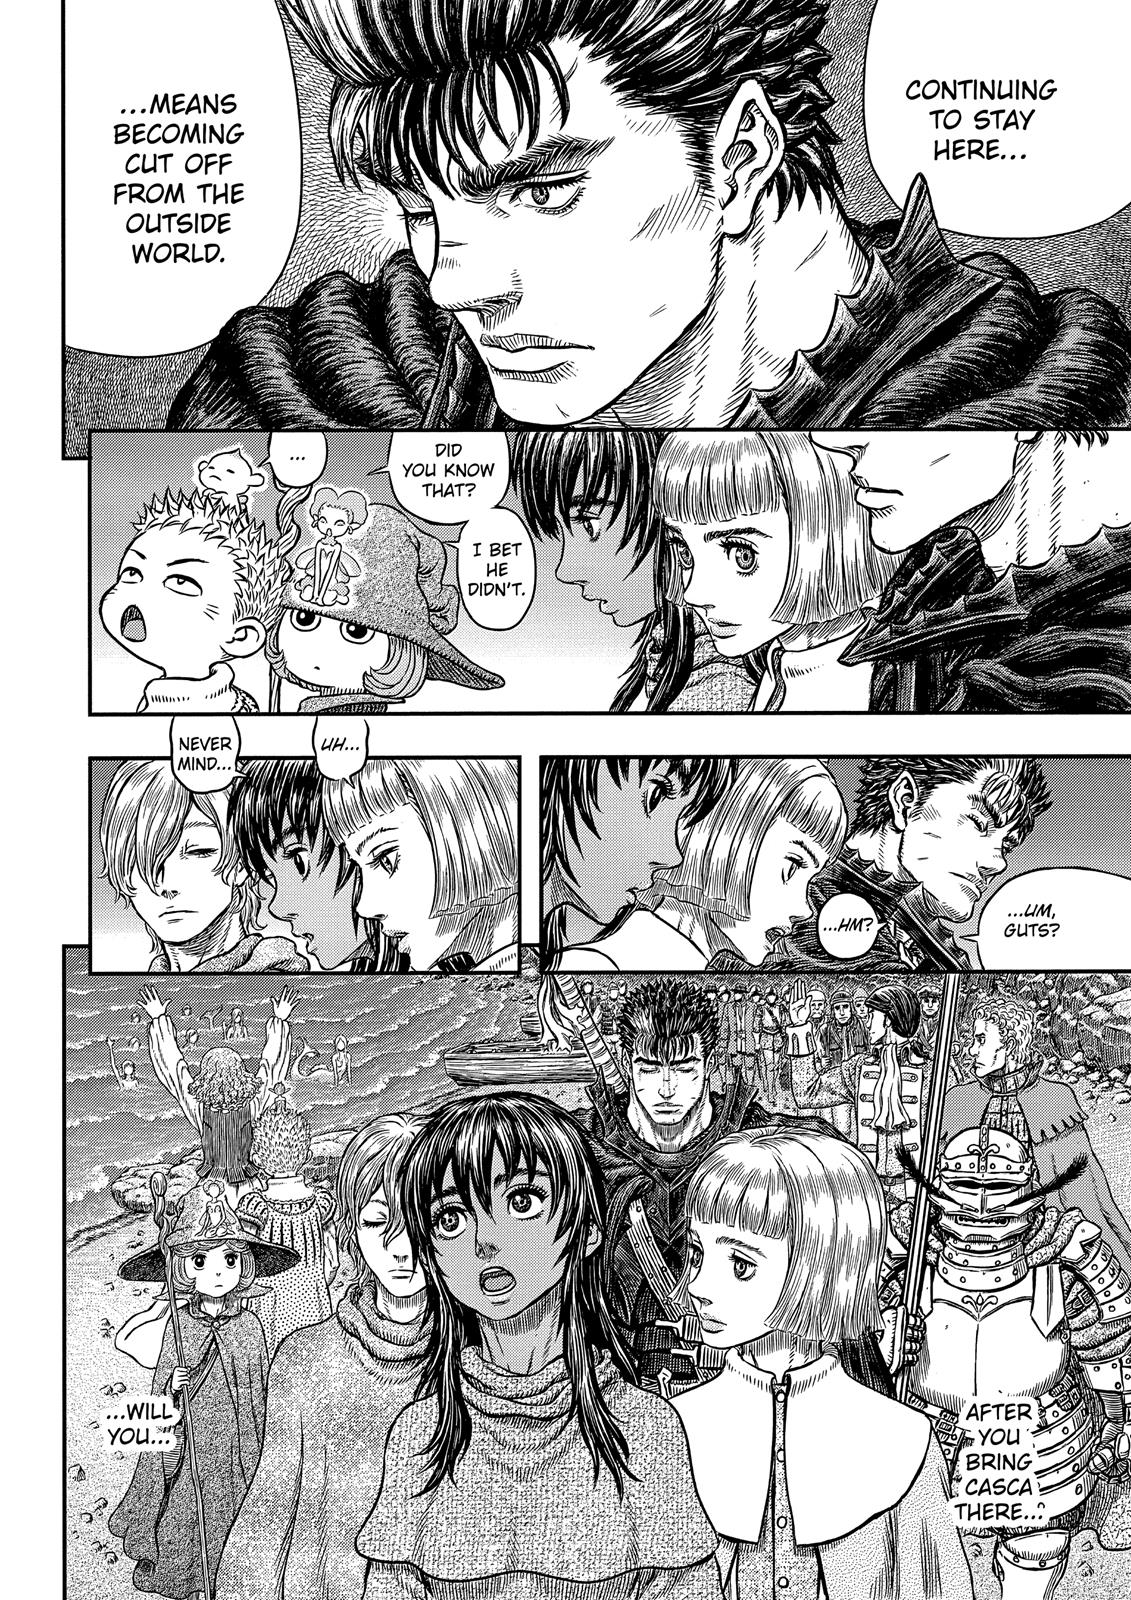 Berserk Manga Chapter 342 image 10